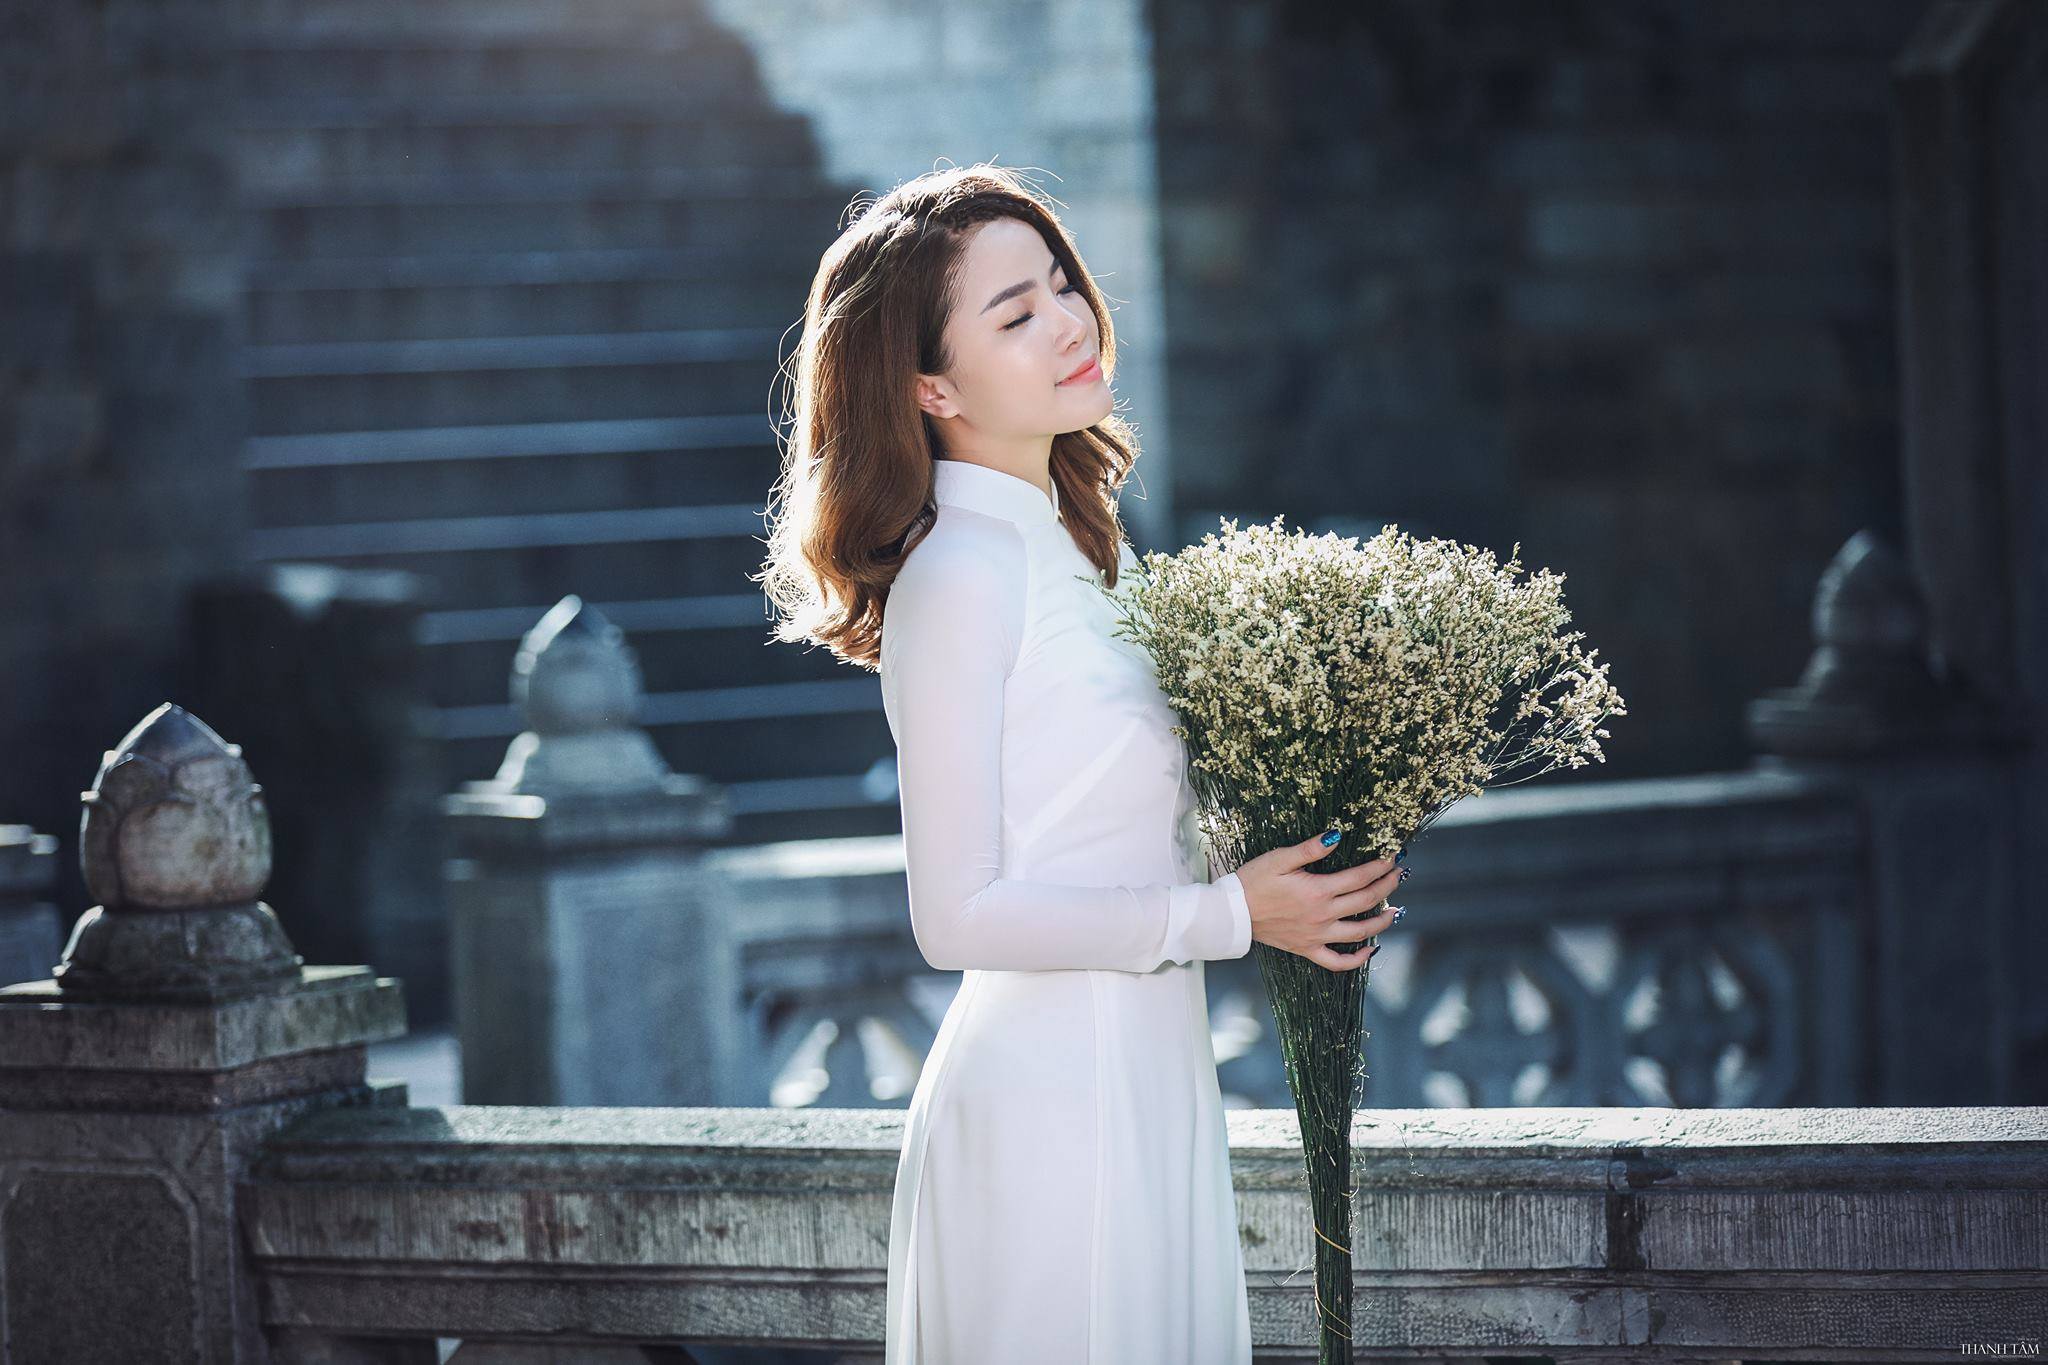 Hường Nguyễn – cô nàng hot facebooker từng gây bão về đám cưới hạnh phúc với “soái ca” kém tuổi.